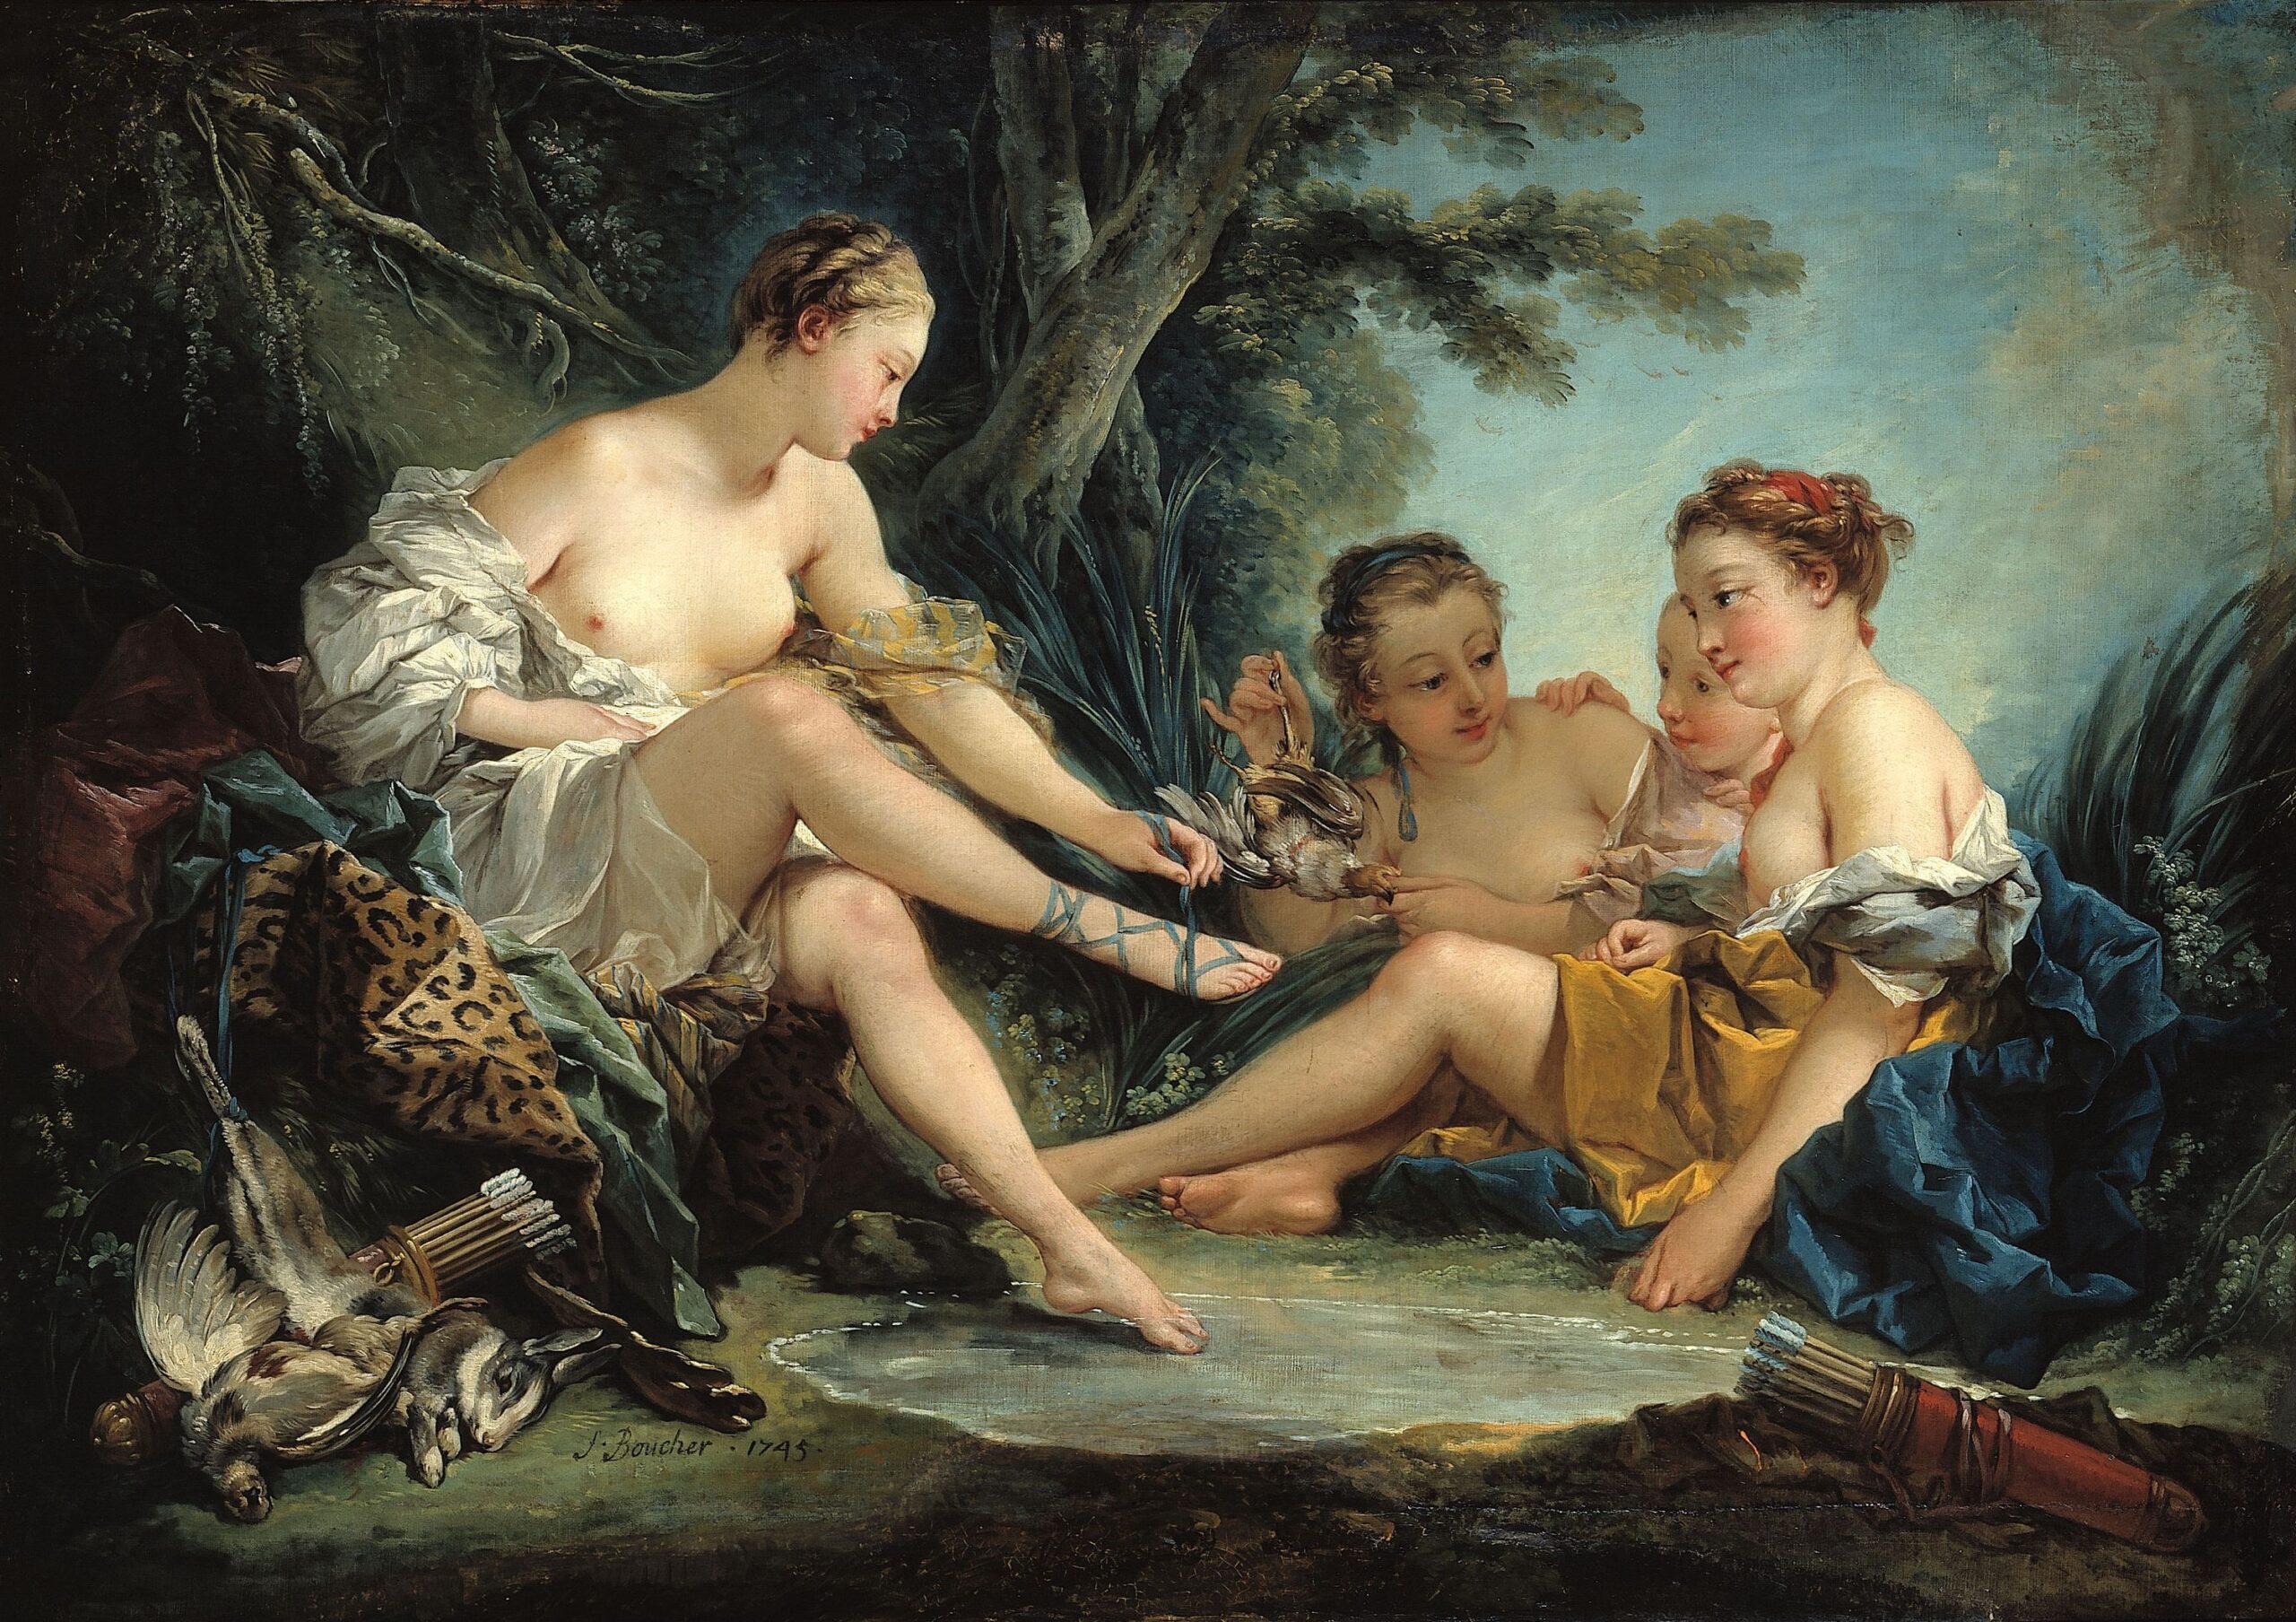 François Boucher (1703-1770). "Le Repos des nymphes" ou "Retour de chasse de Diane". Huile sur toile, 1745. Paris, musée Cognacq-Jay.